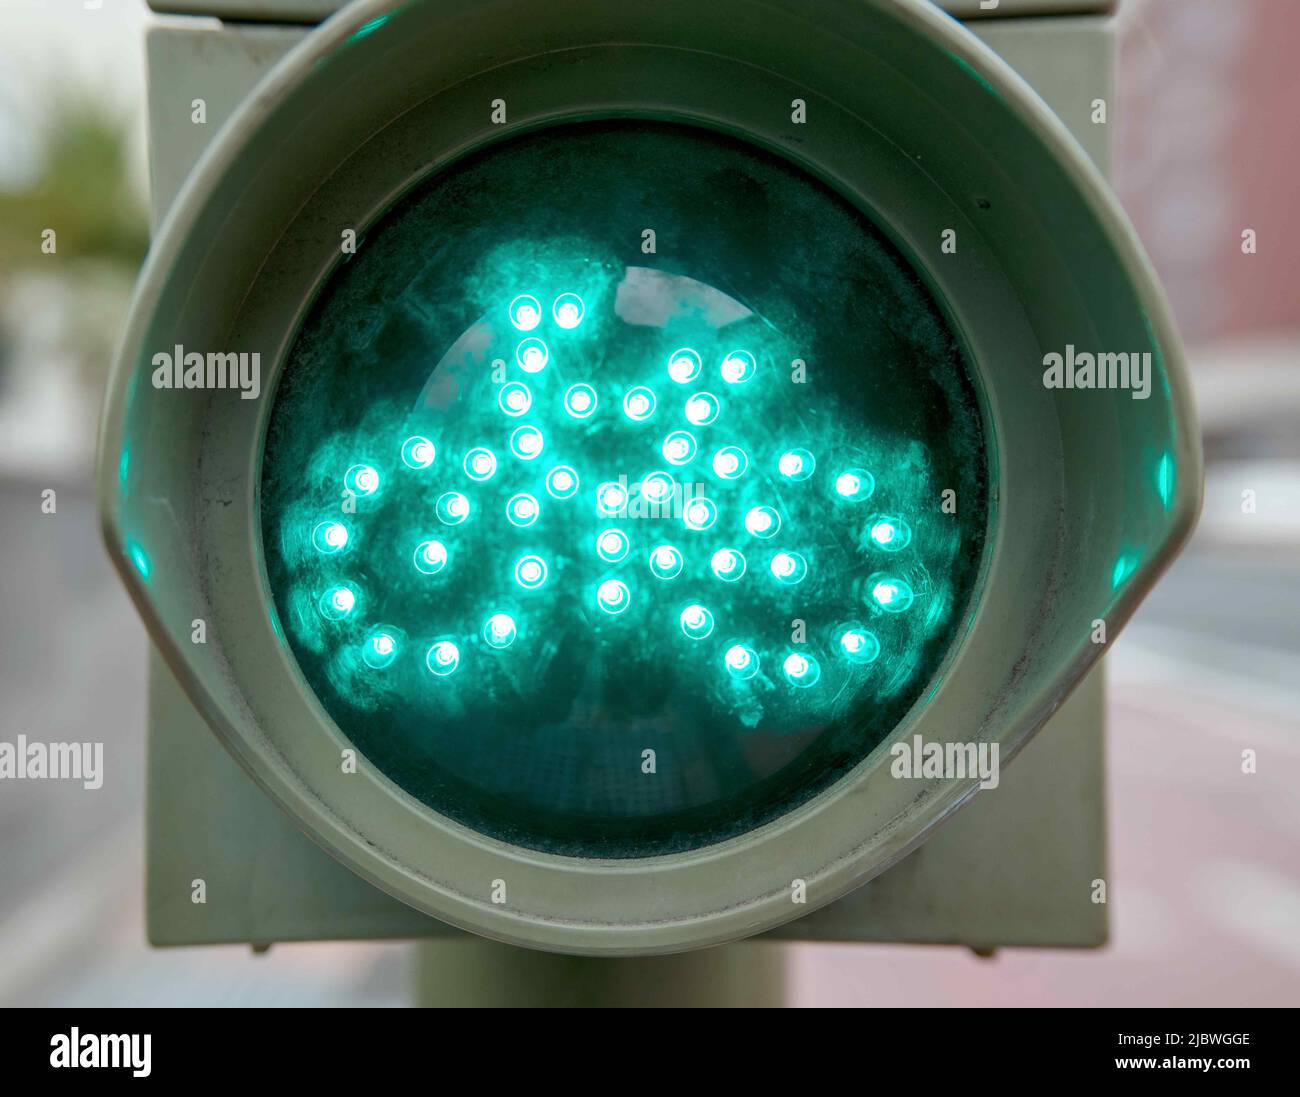 Semaforo per biciclette con semaforo verde. Foto Stock